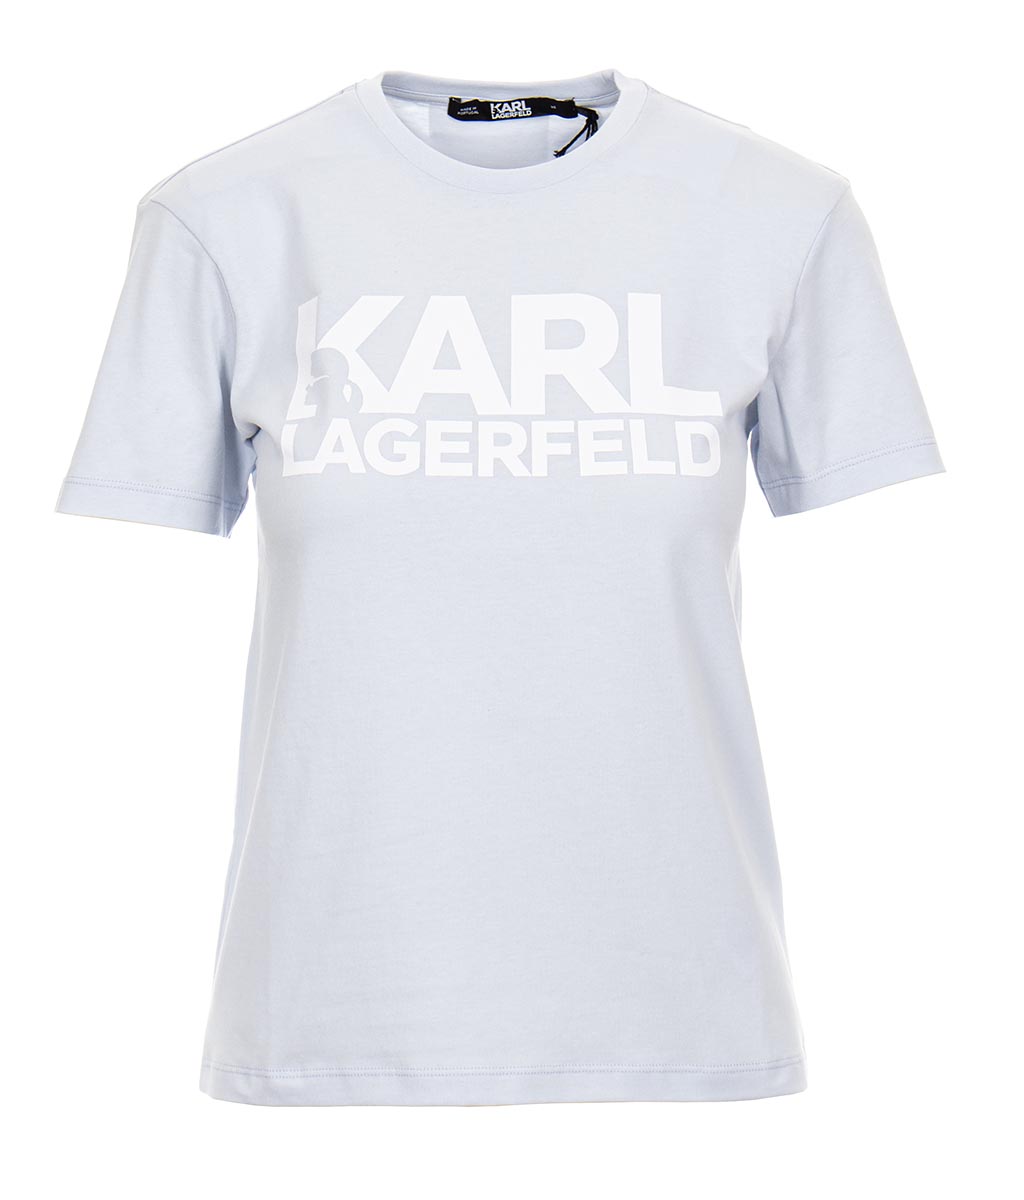 Karl Lagerfeld dámské modré tričko s potiskem Velikost: S